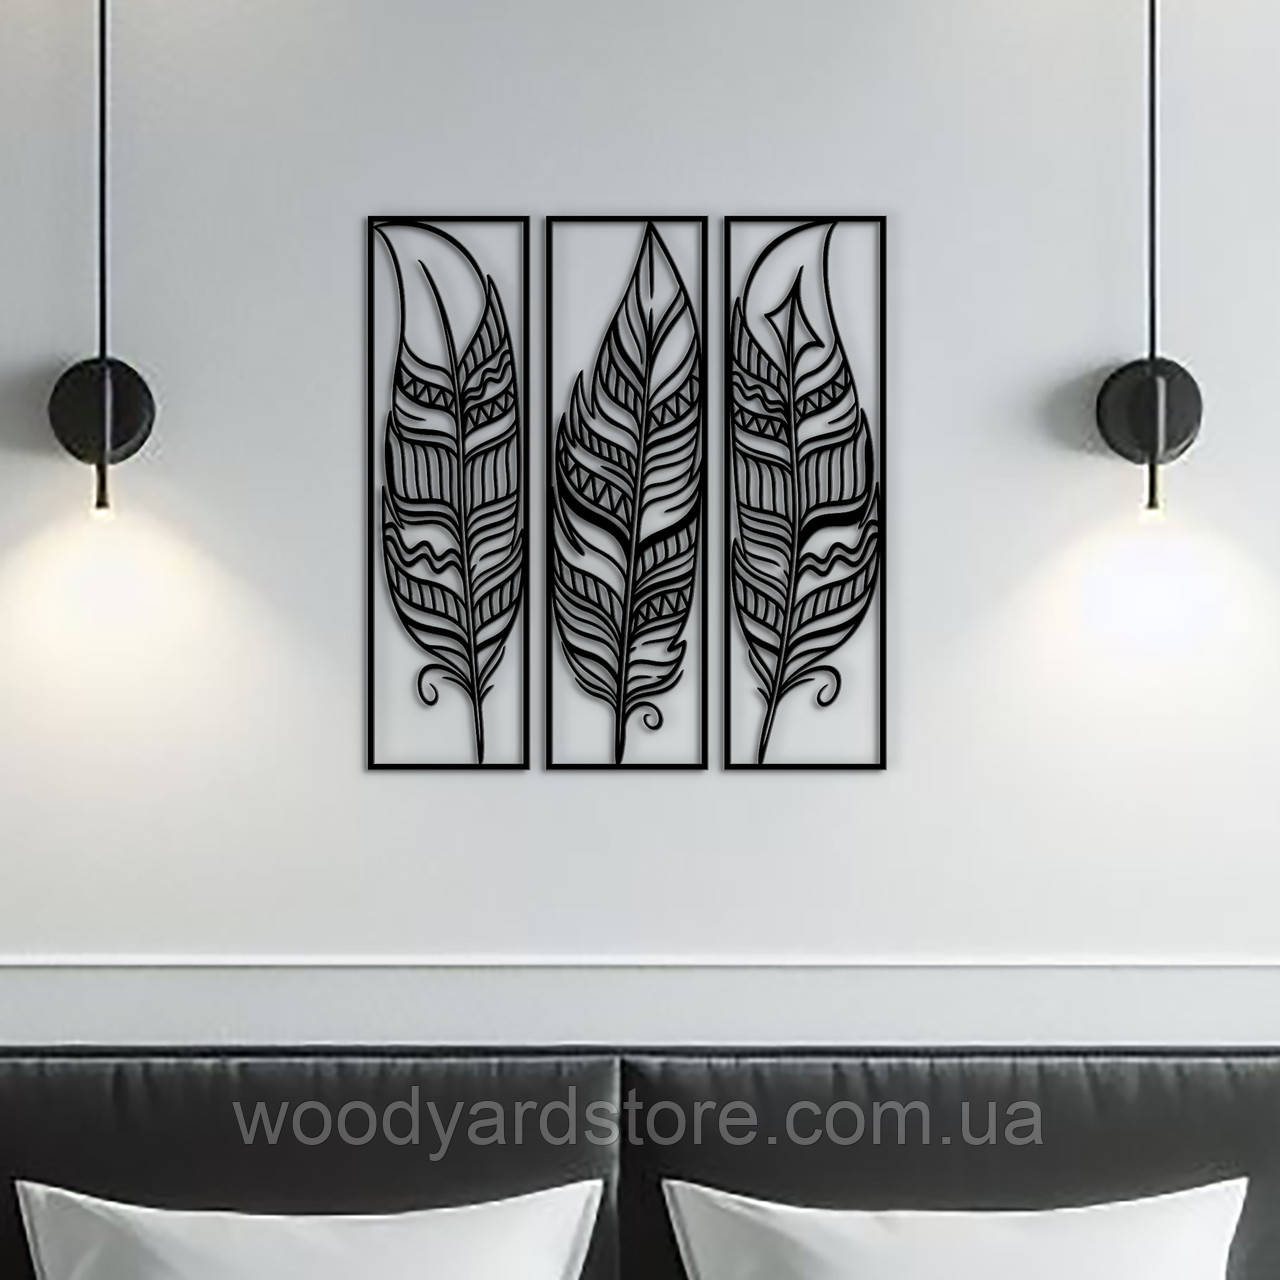 Модульна картина на стіну з дерева, декор для кімнати "Пір'я в рамці модульні", стиль лофт 25x23 см